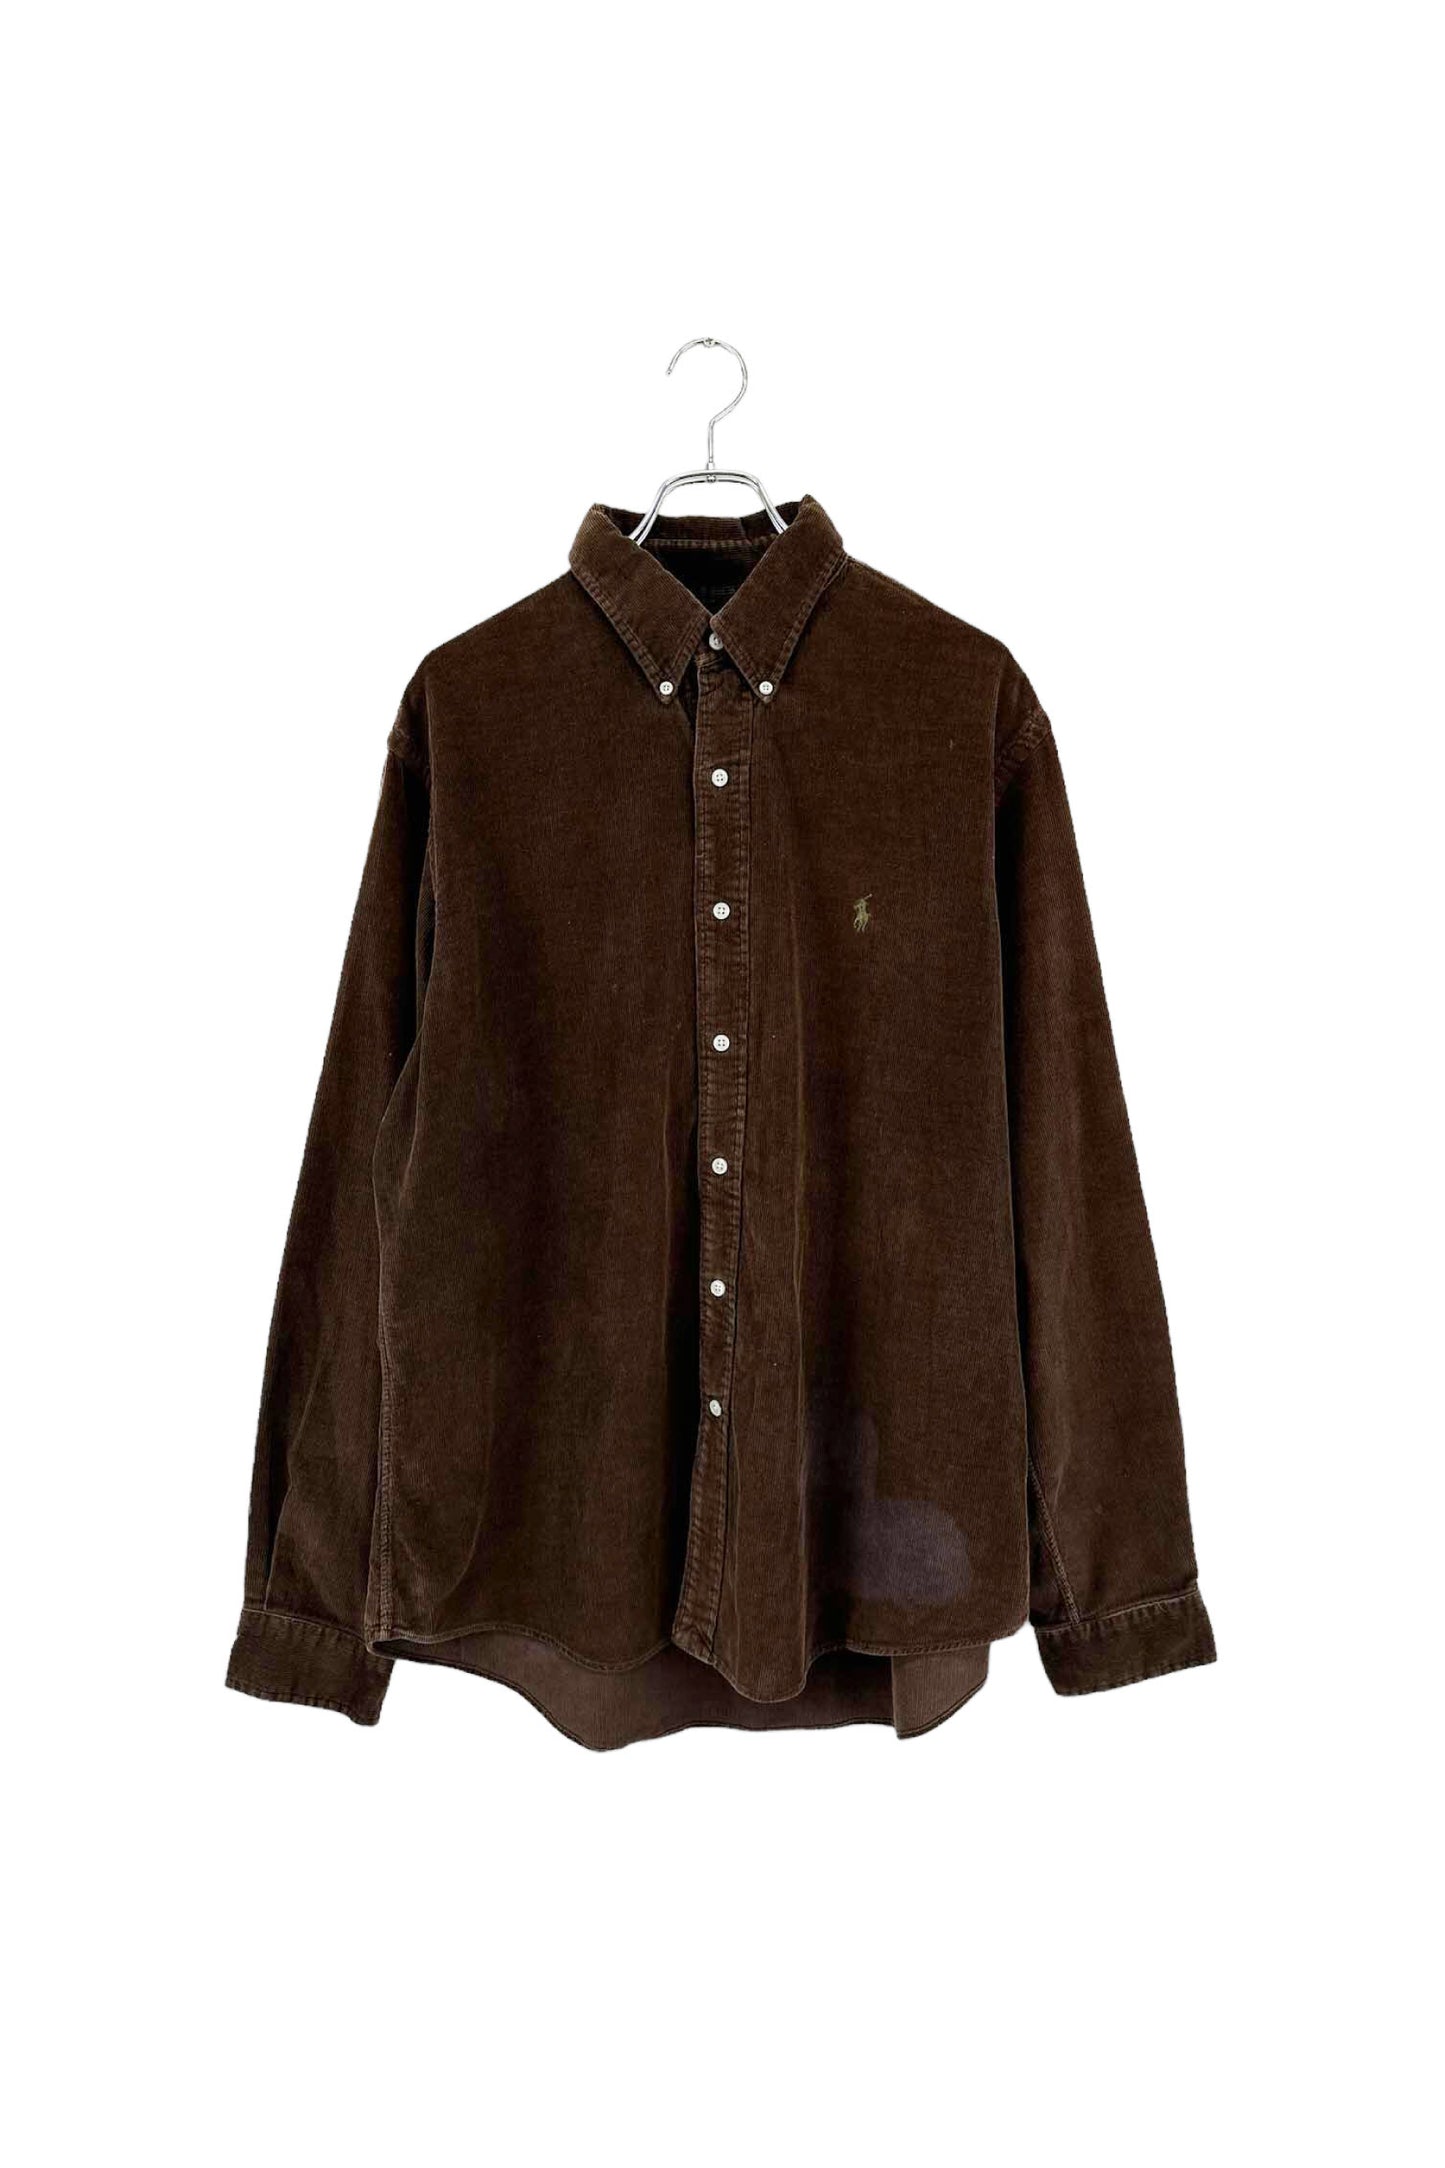 90's Ralph Lauren brown corduroy shirt